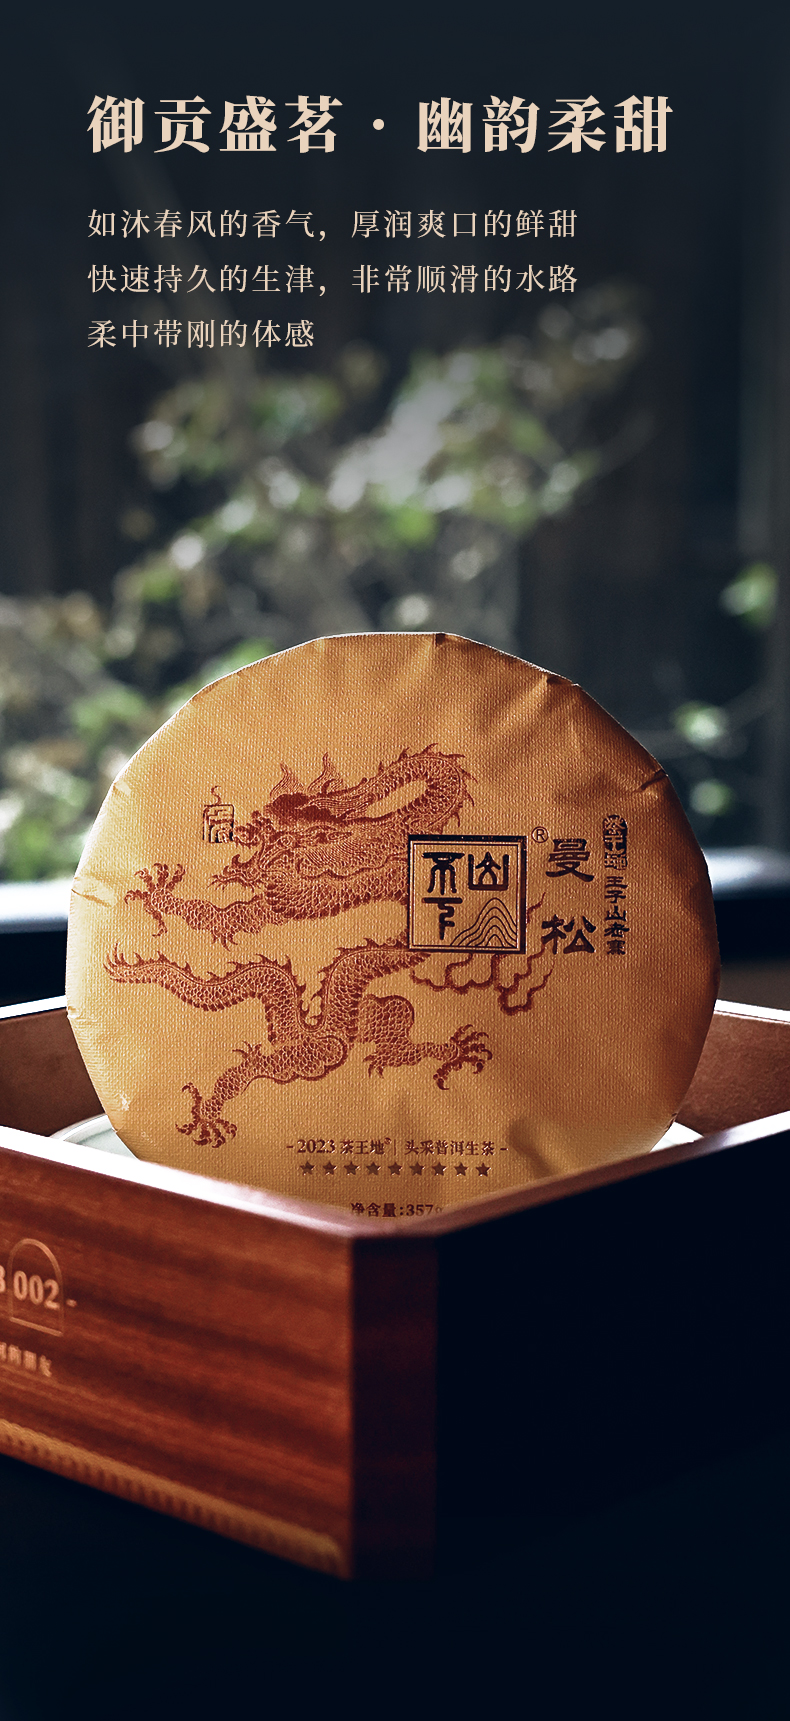 九星茶王地曼松-茶饼_13